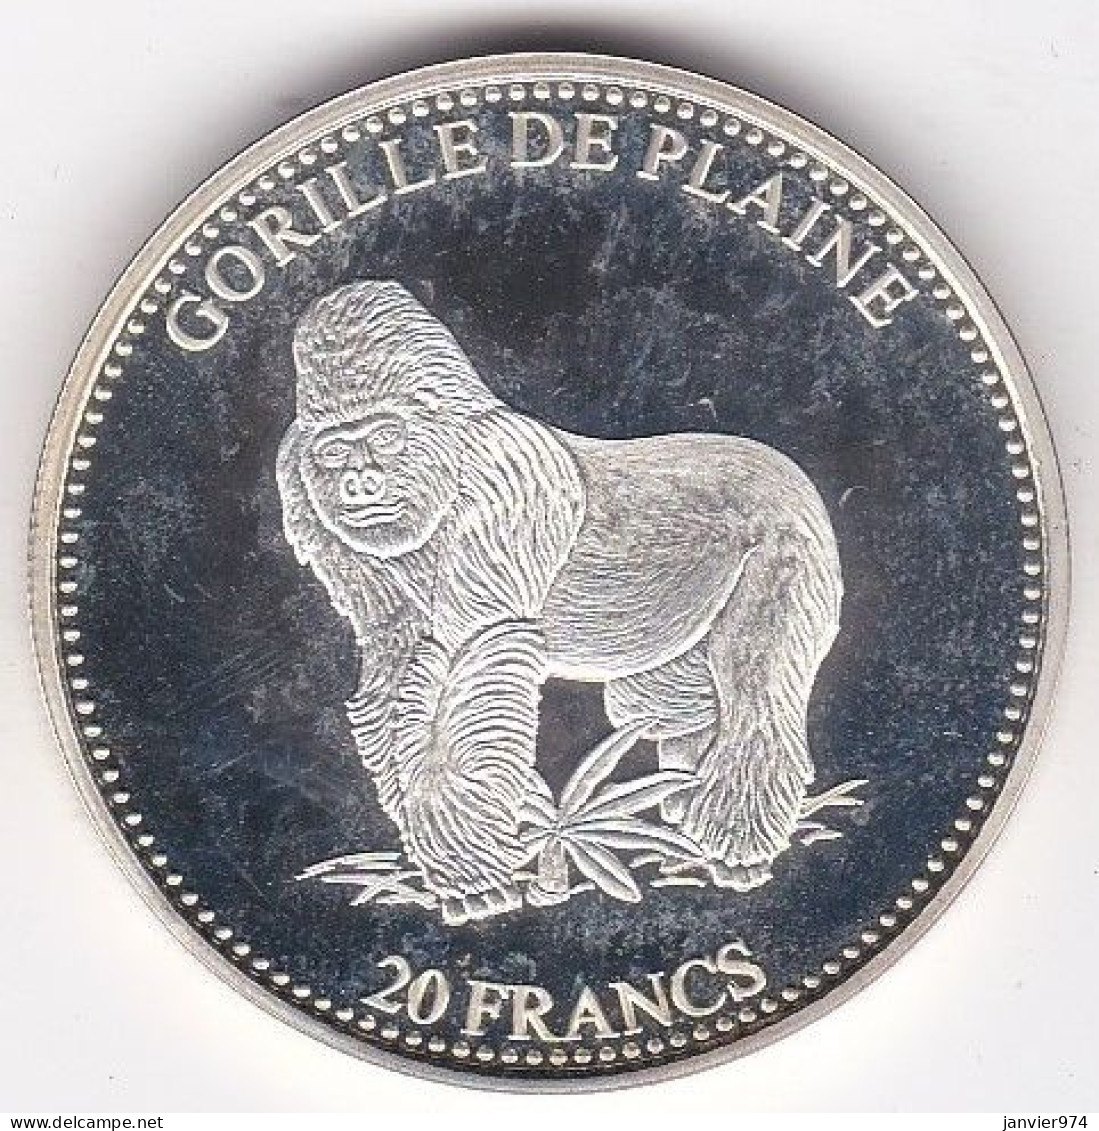 Congo 20 Francs 2001 Proof , Gorille De Plaine, Lion. En Argent. Pur, FDC, - Congo (Democratische Republiek 1998)